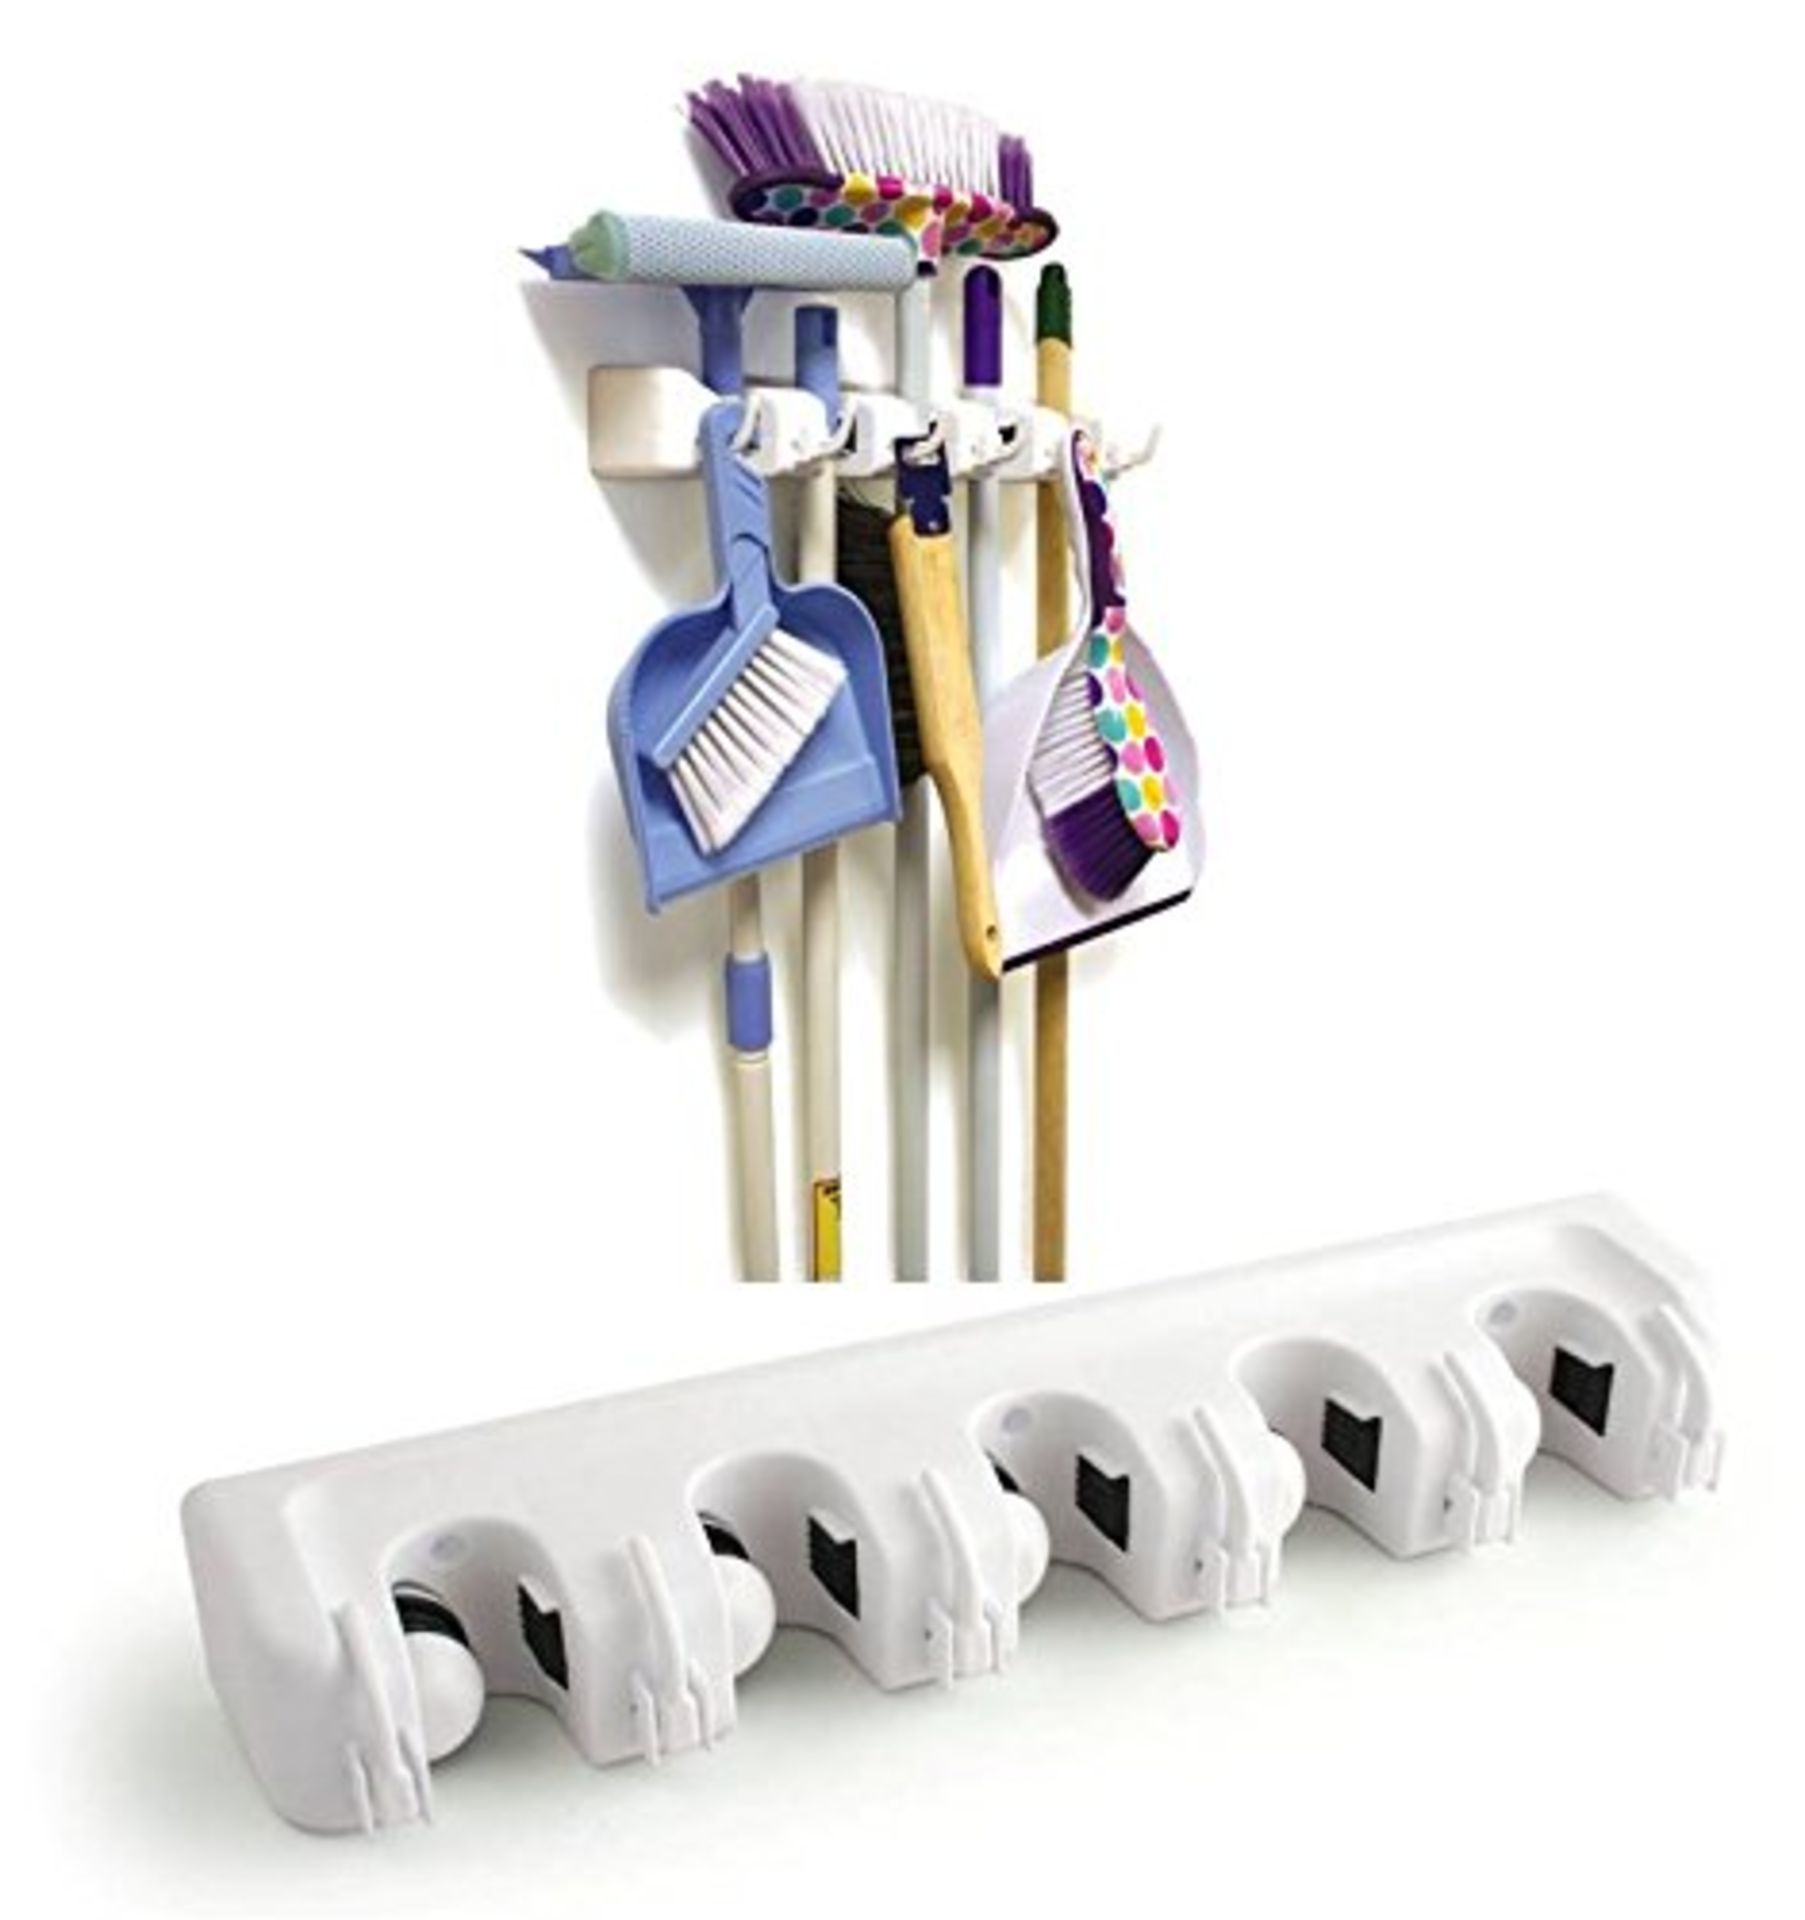 V Brand New Broom Cupboard Broom (etc) Holder - Ideal For Kitchen Utility Room Or Garage